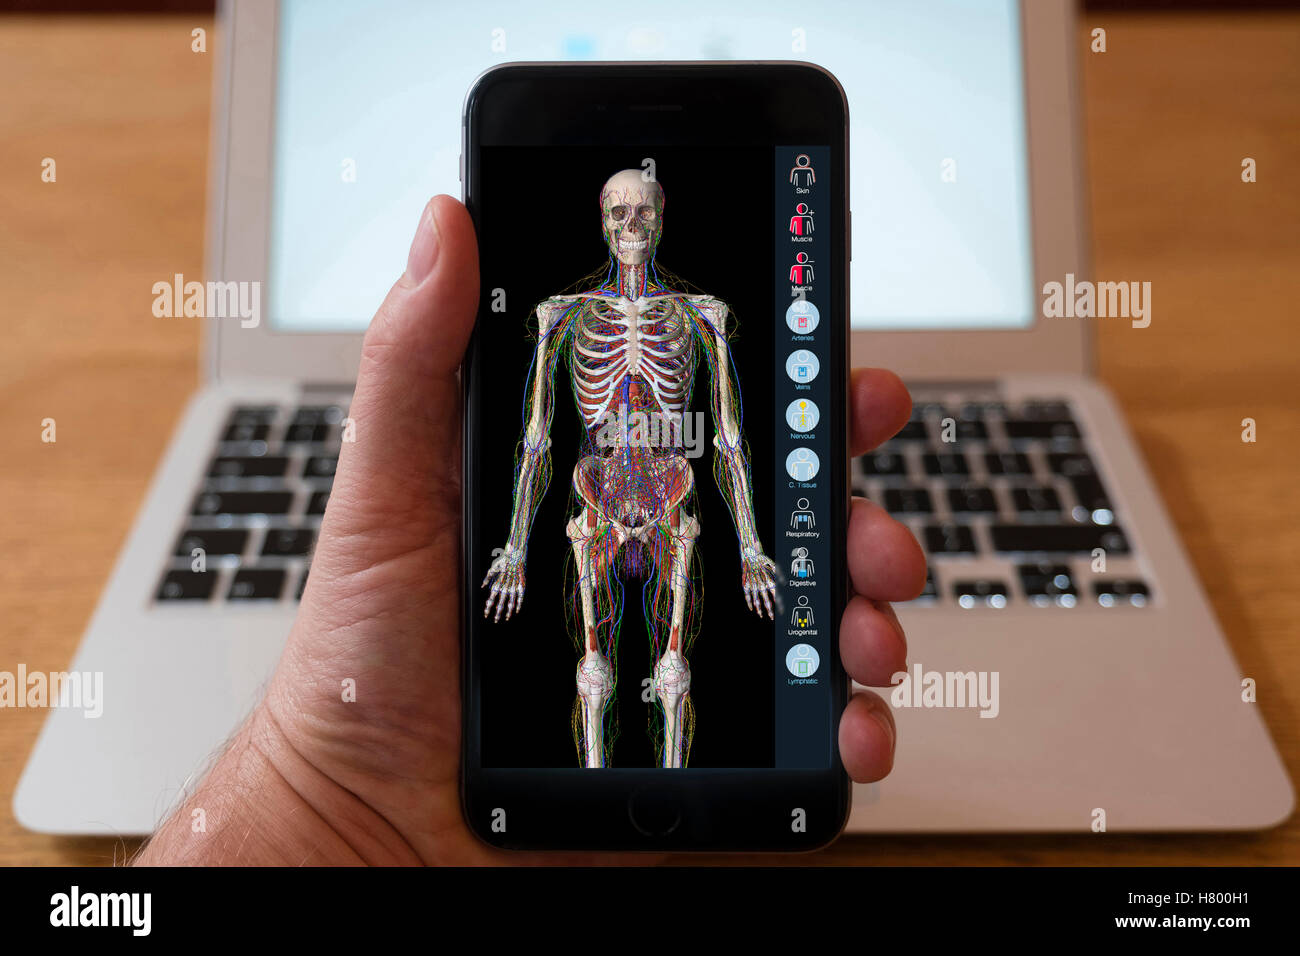 Verwenden iPhone Smartphone zum Bildungs-app Anatomie des menschlichen Körpers anzeigen. Stockfoto